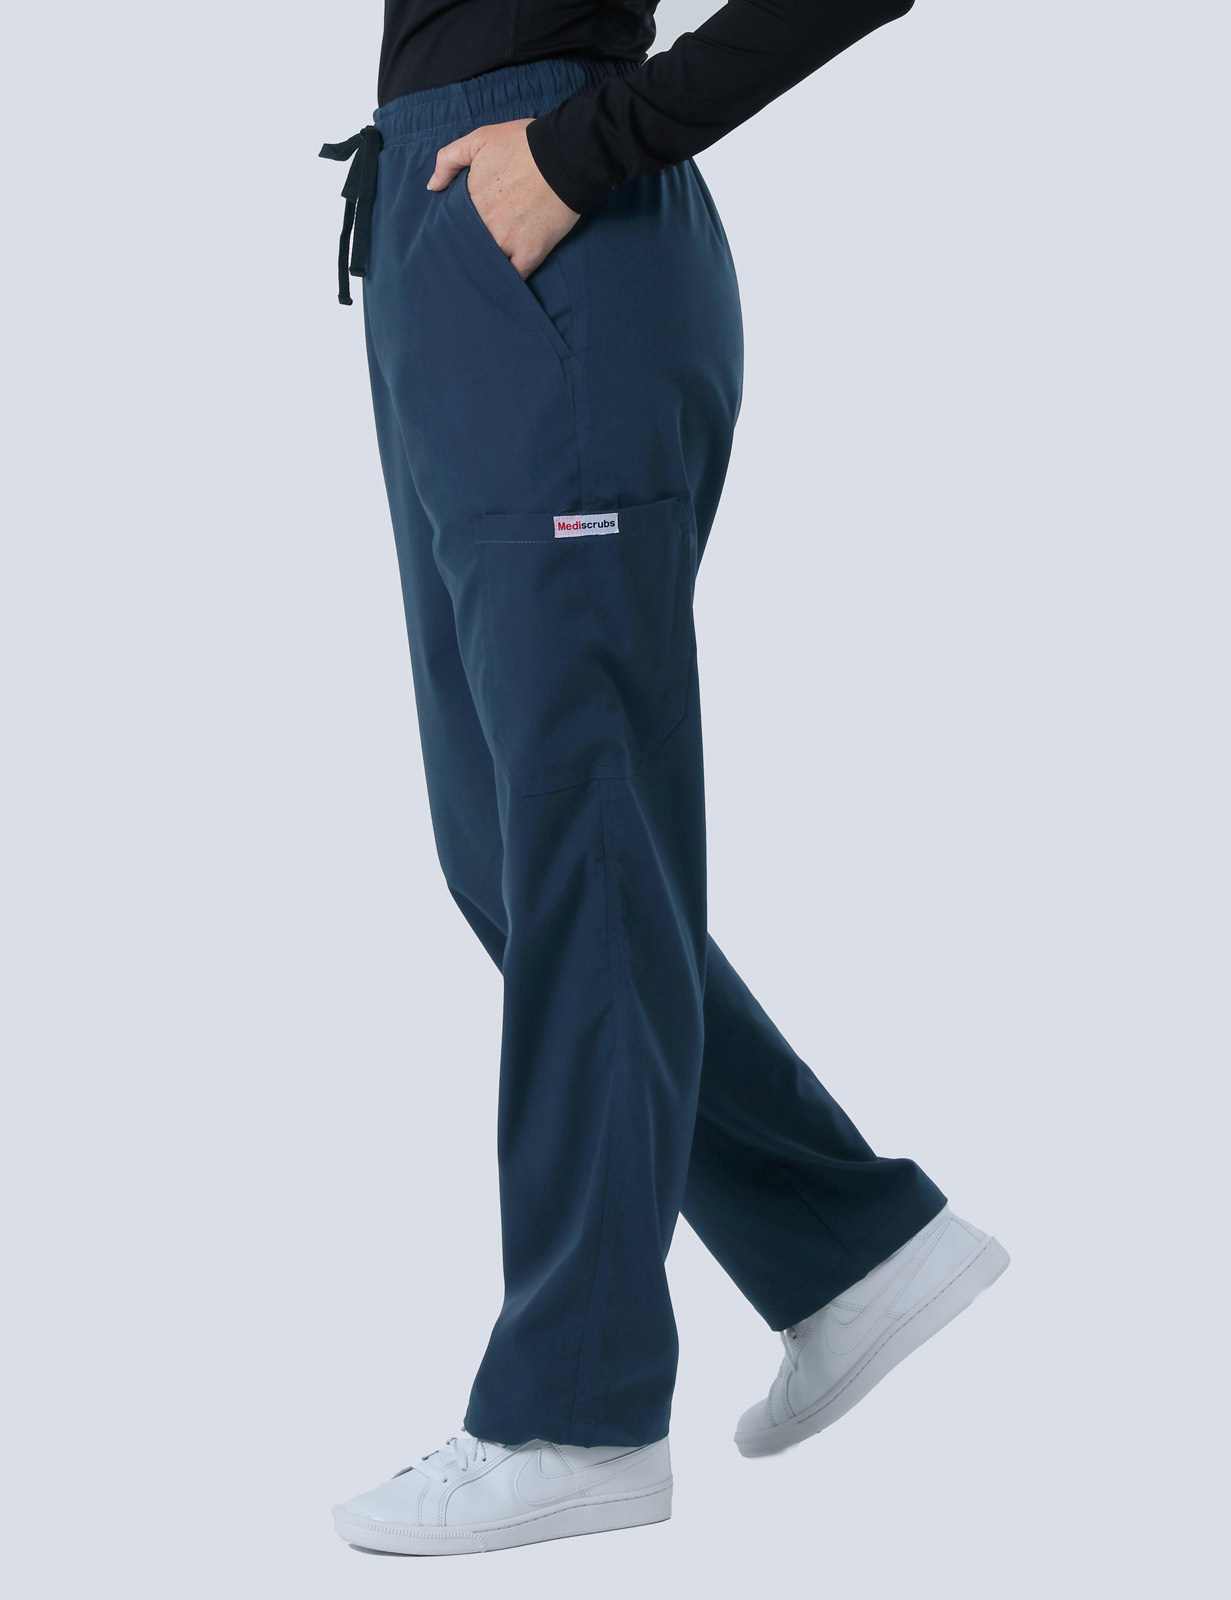 Newborn Doctor Uniform Set Bundle (Women's Fit Solid Top and Cargo Pants in Navy + Logo)